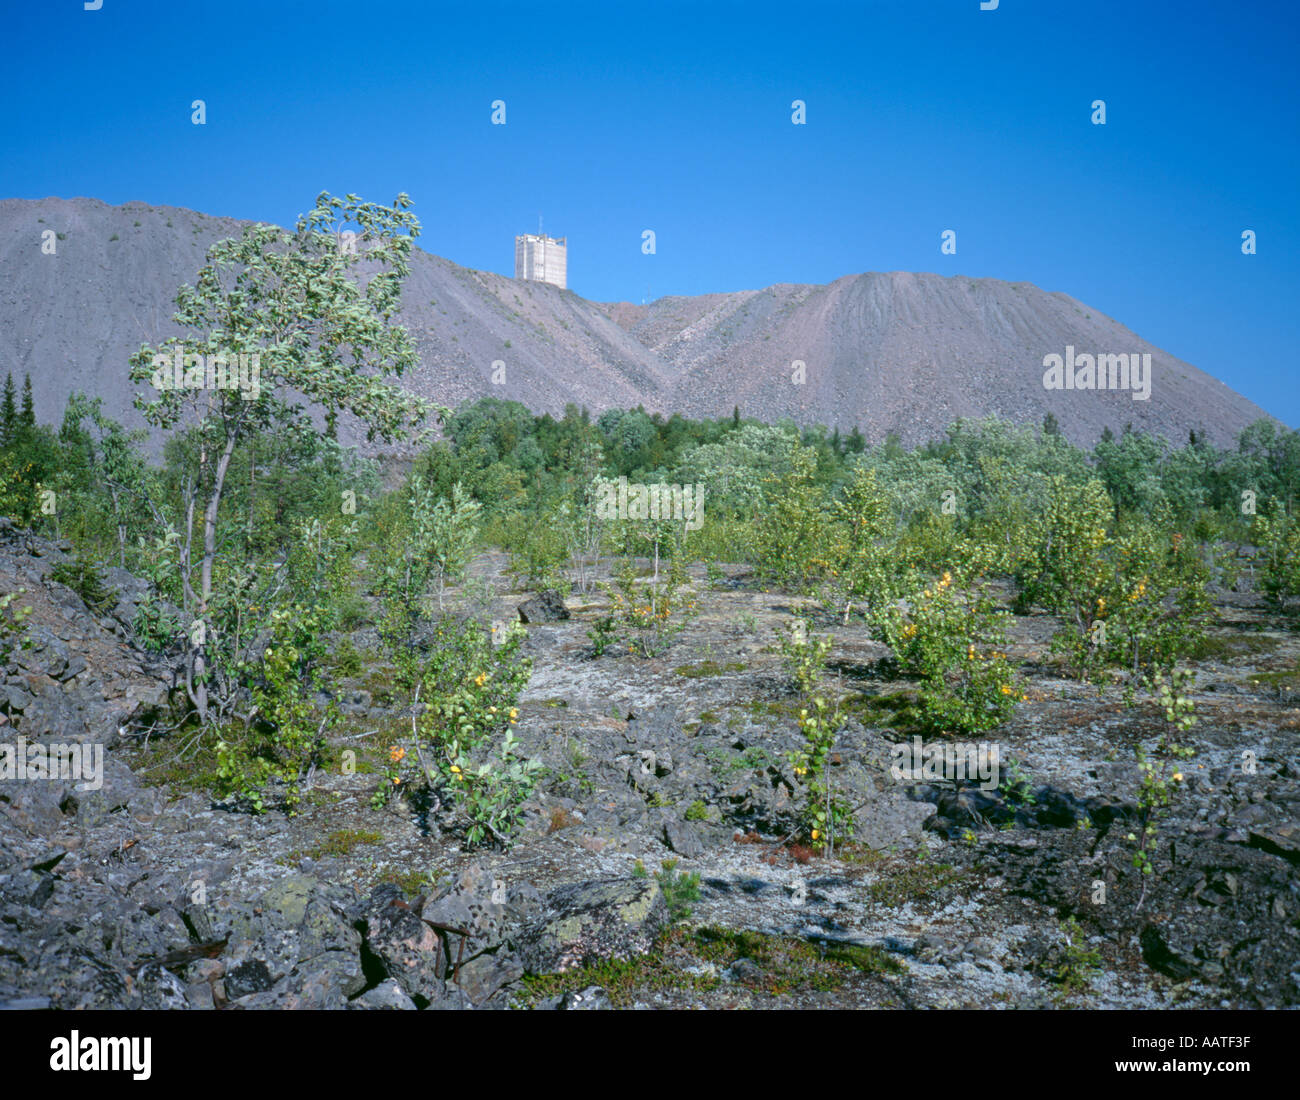 La mia testa albero palazzo visto sopra cumuli di scorie, Malmberget (ore) di montagna, Lappland, Norrbottens län (Svezia). Foto Stock